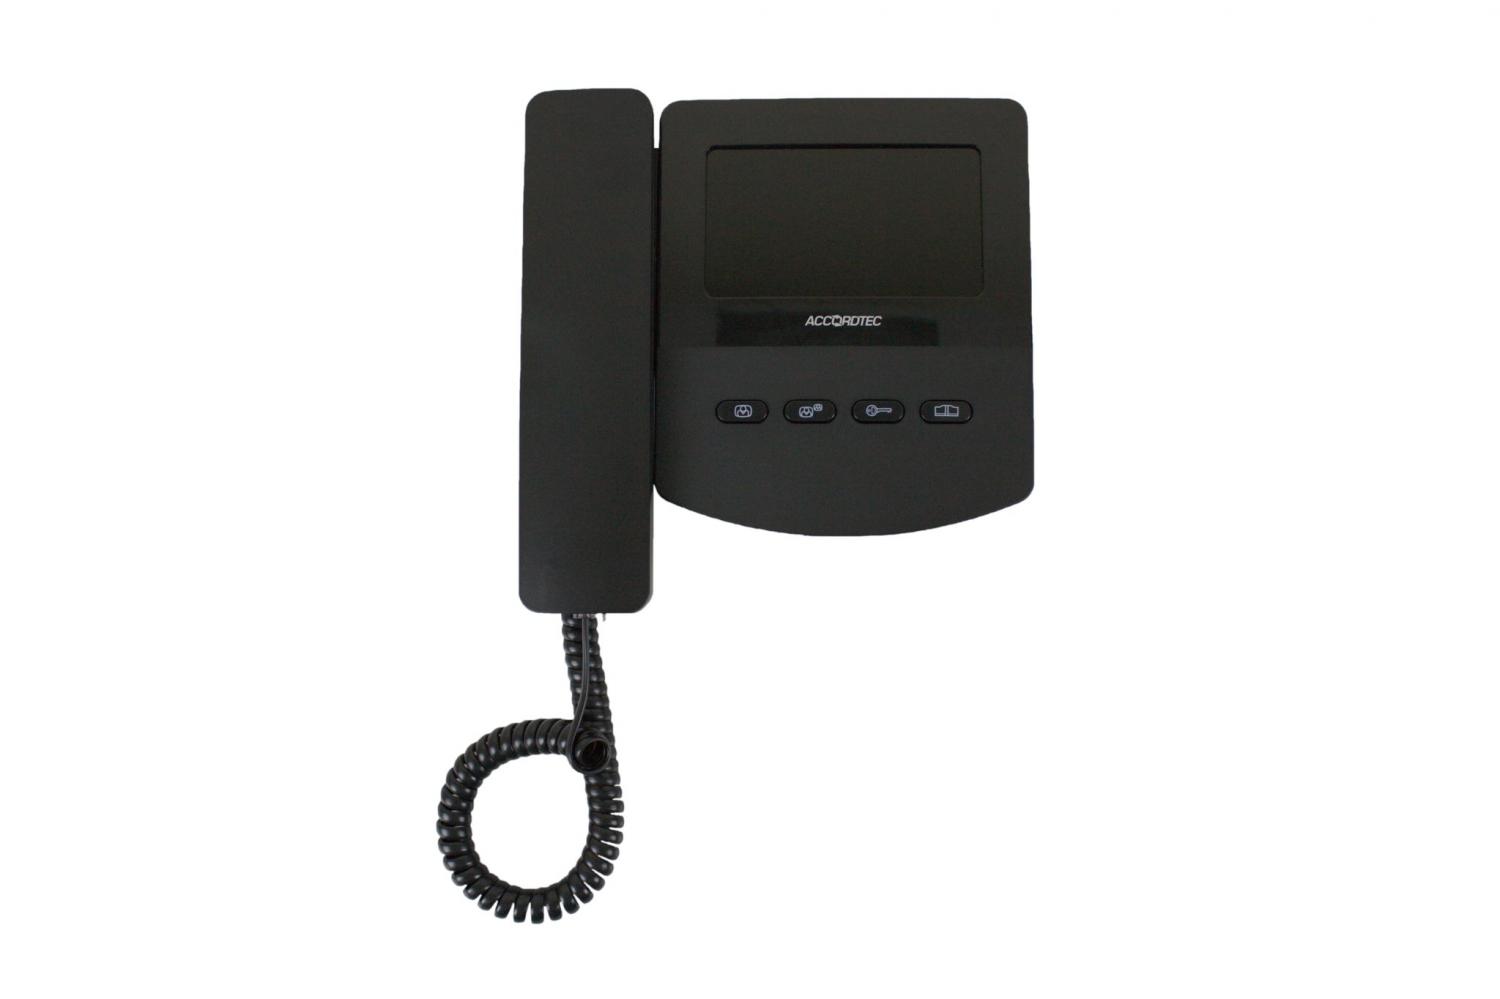 Лучшая цена на AccordTec AT-VD 433C EXEL (черный) мониторы видеодомофонов купите с доставкой на дом #оставайтесьдома